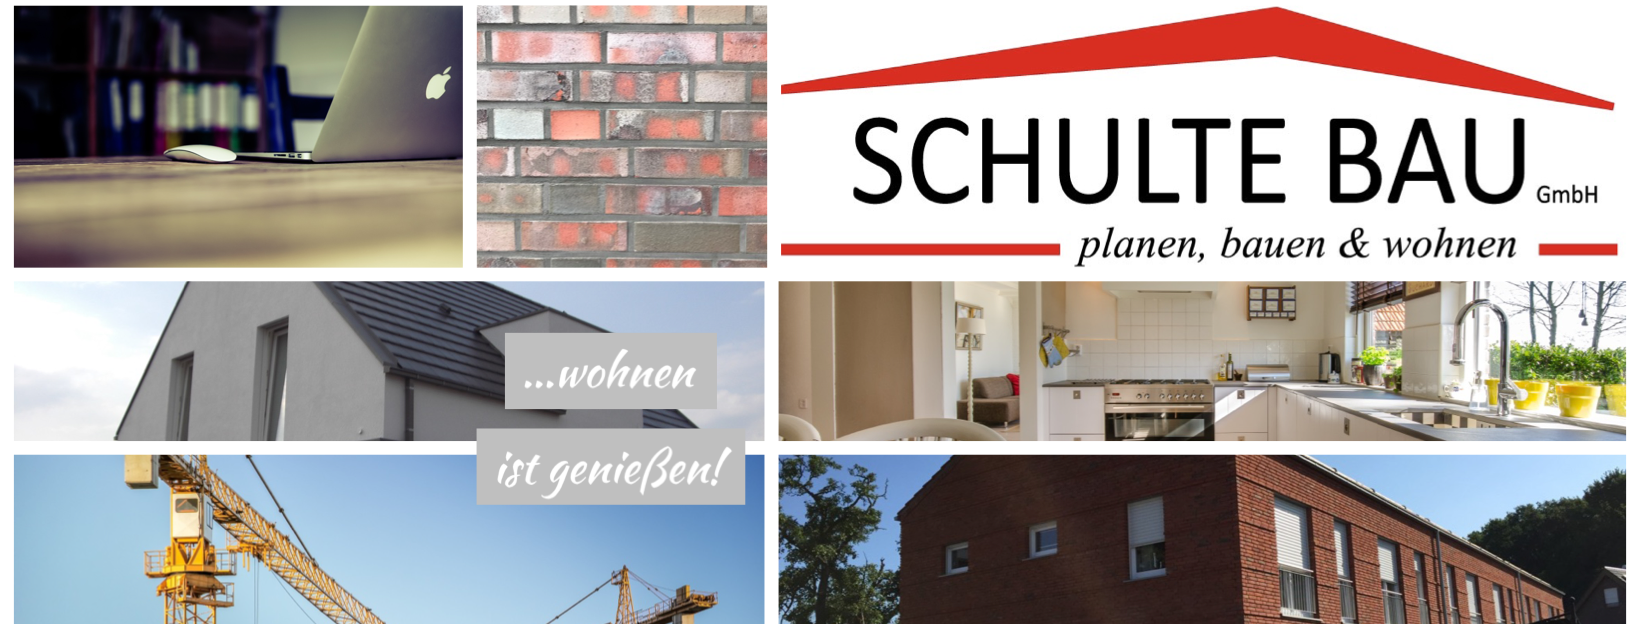 Wir suchen Verstärkung - JOBS | SCHULTE BAU GmbH